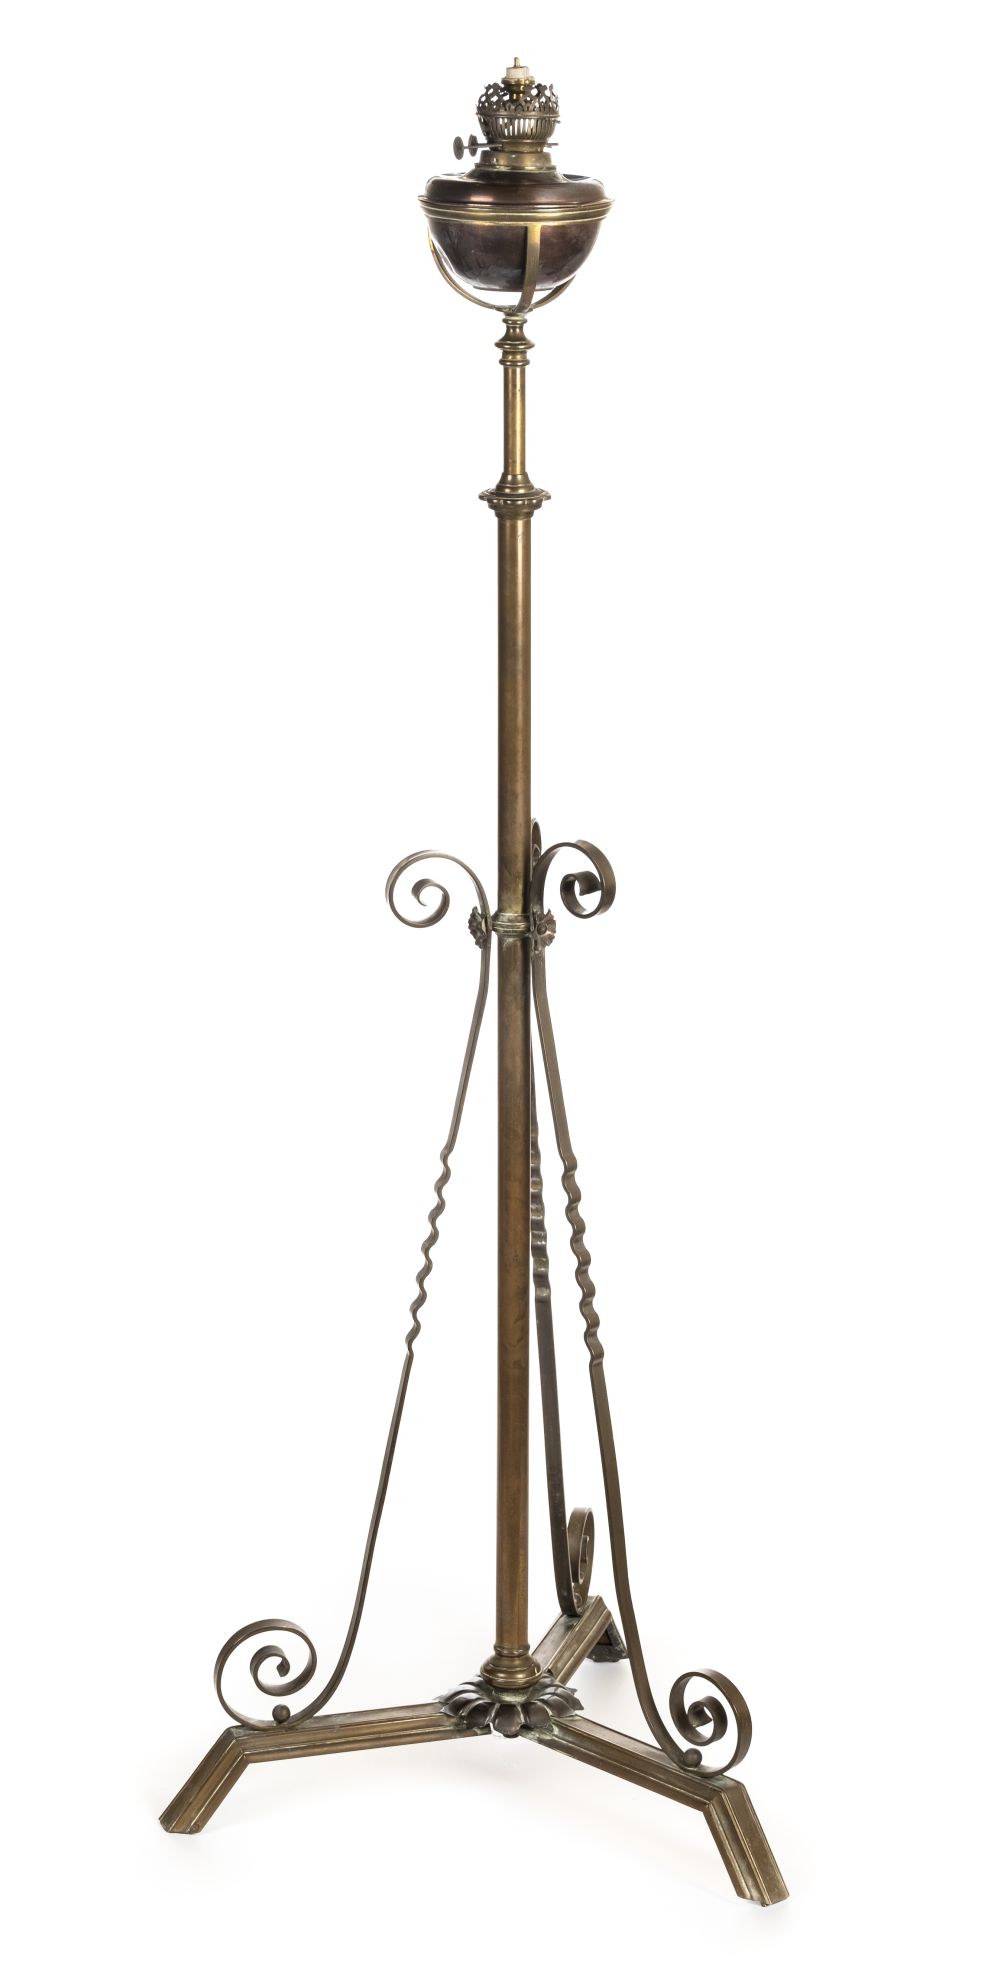 * Standard lamp. A Victorian brass telescopic standard lamp